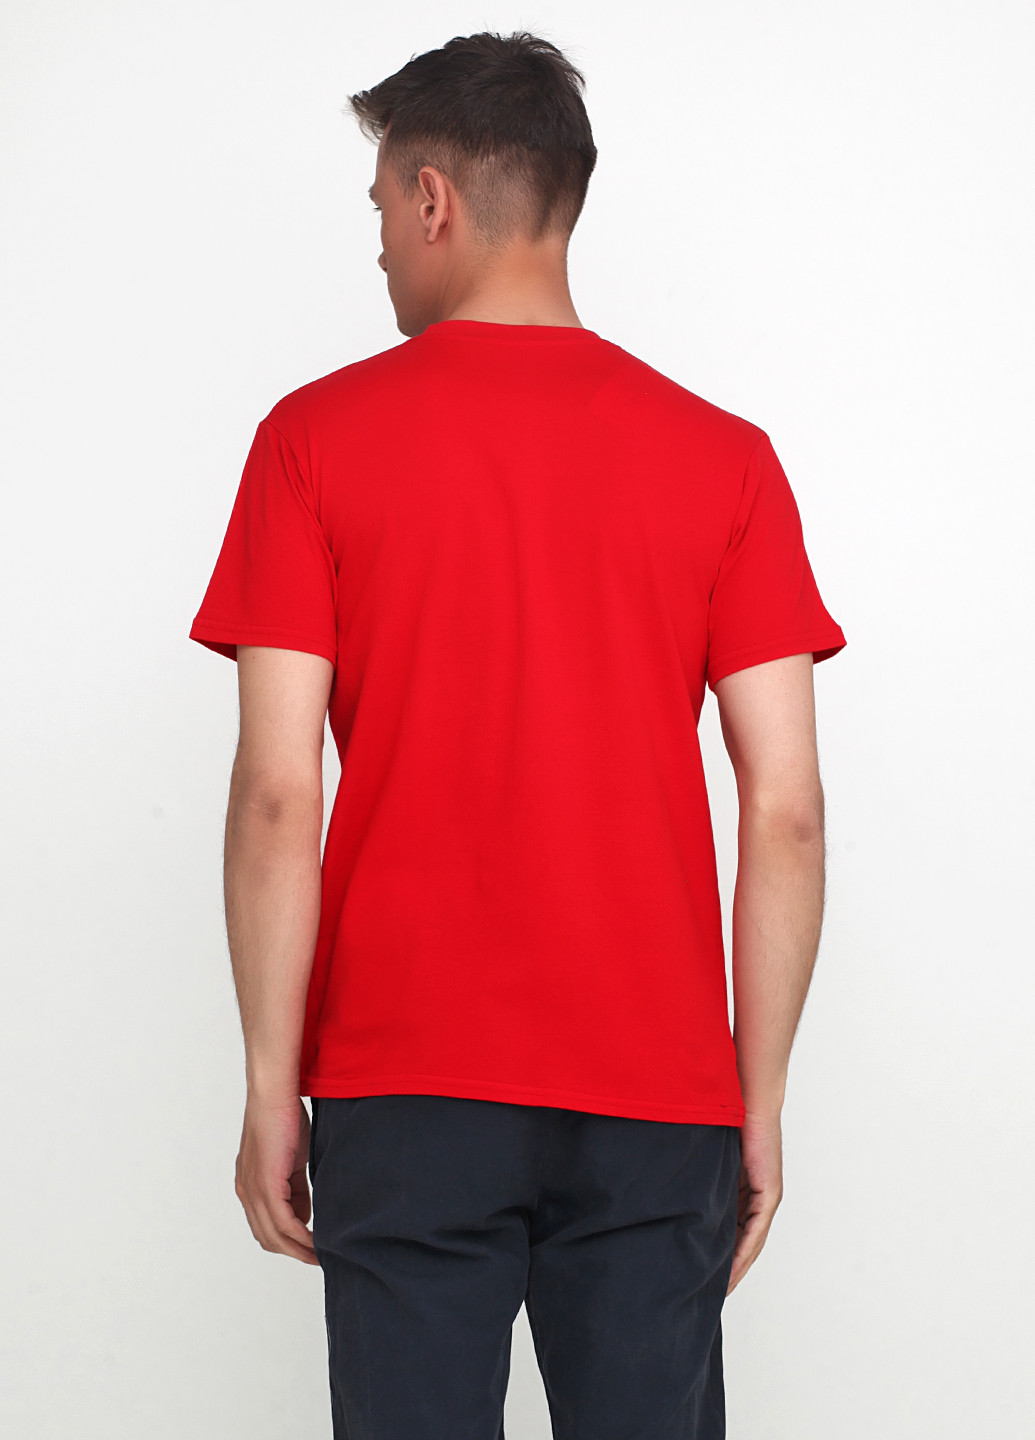 Червона футболка чоловіча 19м319-17 синя(електро) з коротким рукавом Malta